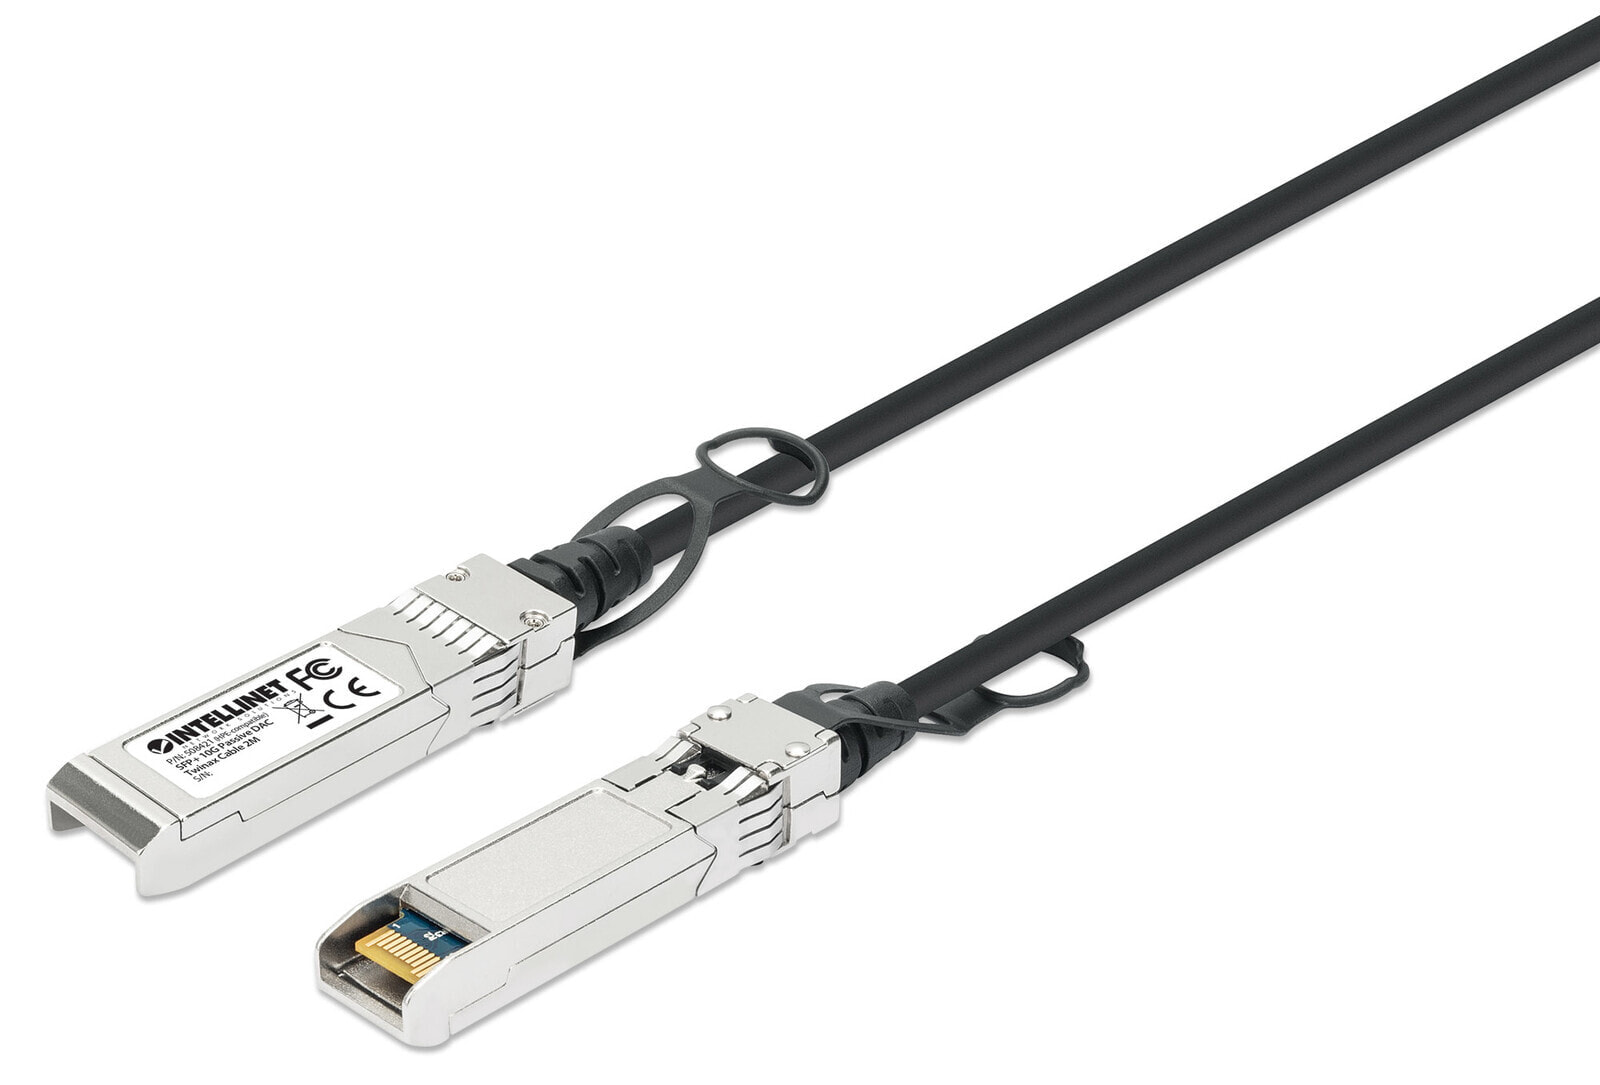 Intellinet 508421 волоконно-оптический кабель 2 m SFP+ Черный, Серебристый